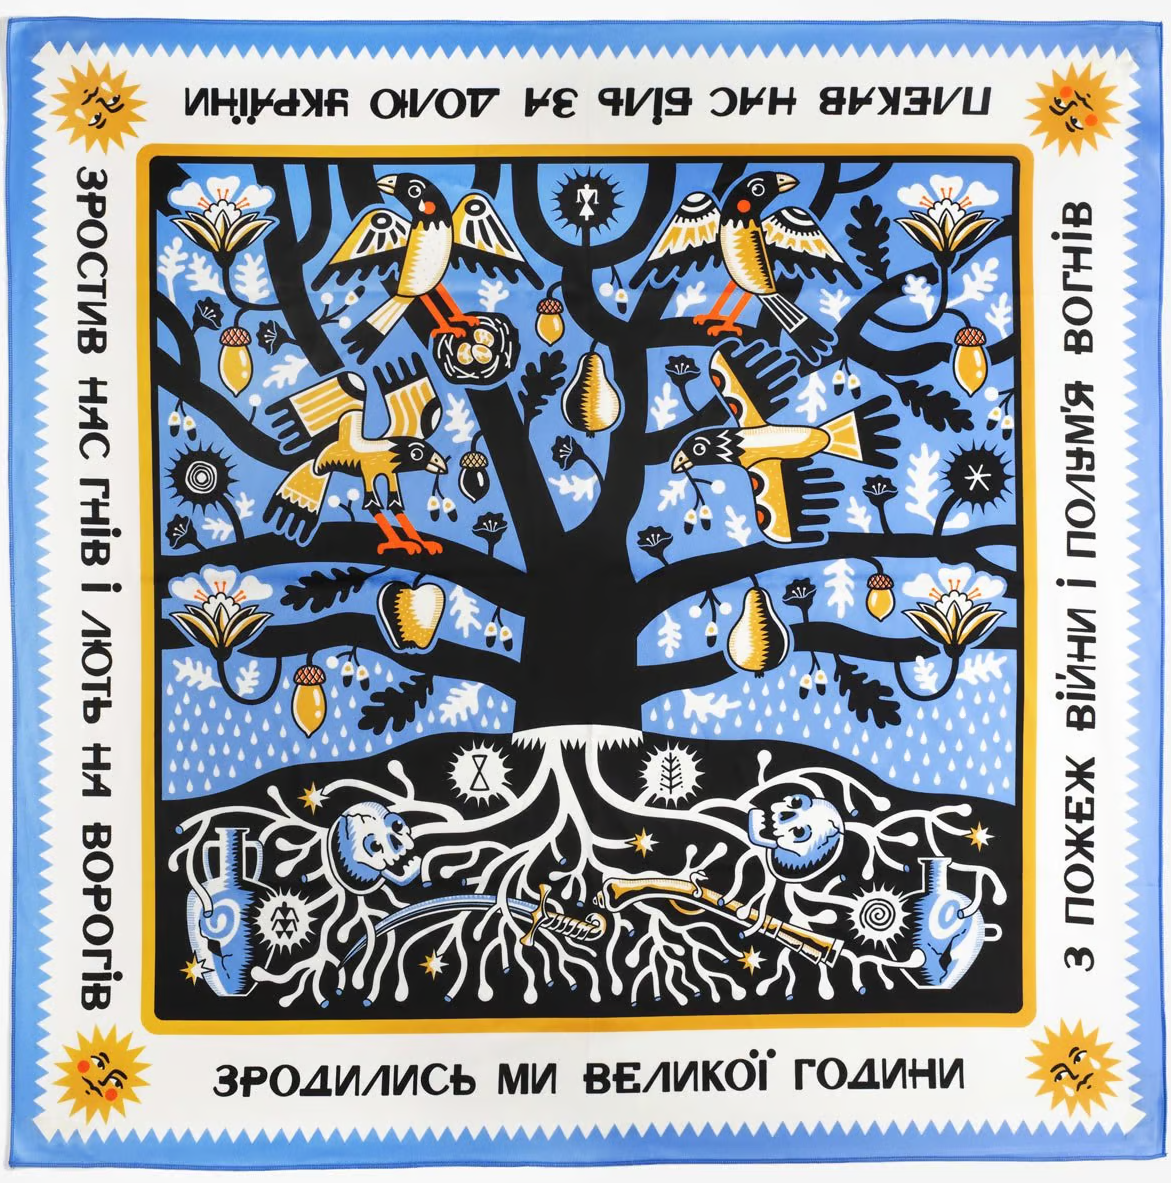 Пшениця, коріння, малюнки з затопленого дому Херсонщни – мотиви сучасних українських хусток